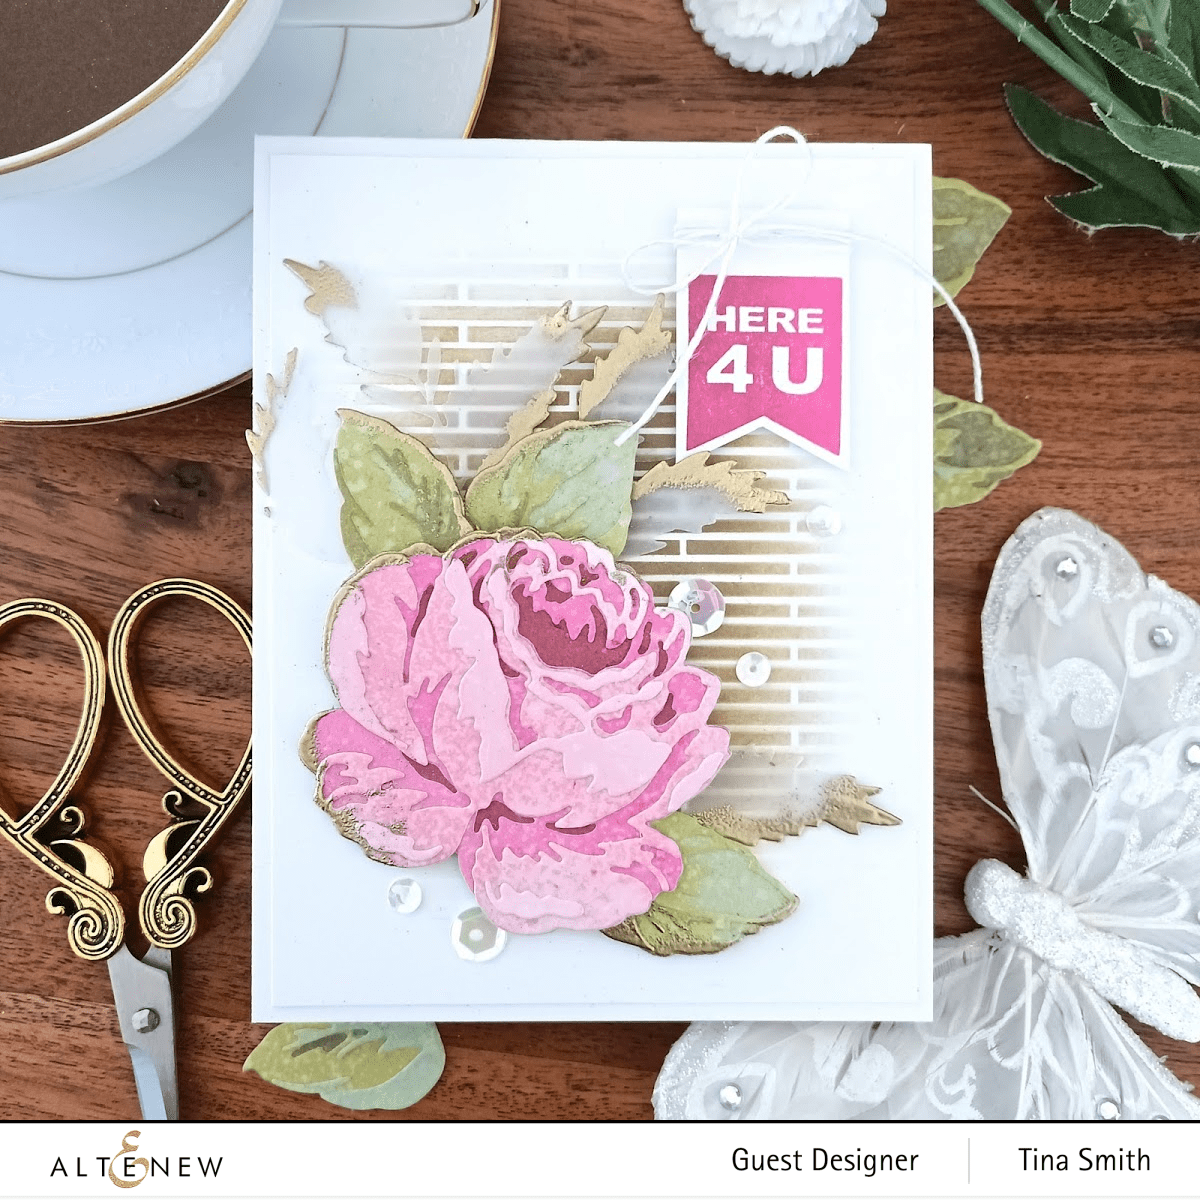 Part A-Glitz Art Craft Co.,LTD Dies Craft-A-Flower: Antique Rose Layering Die Set